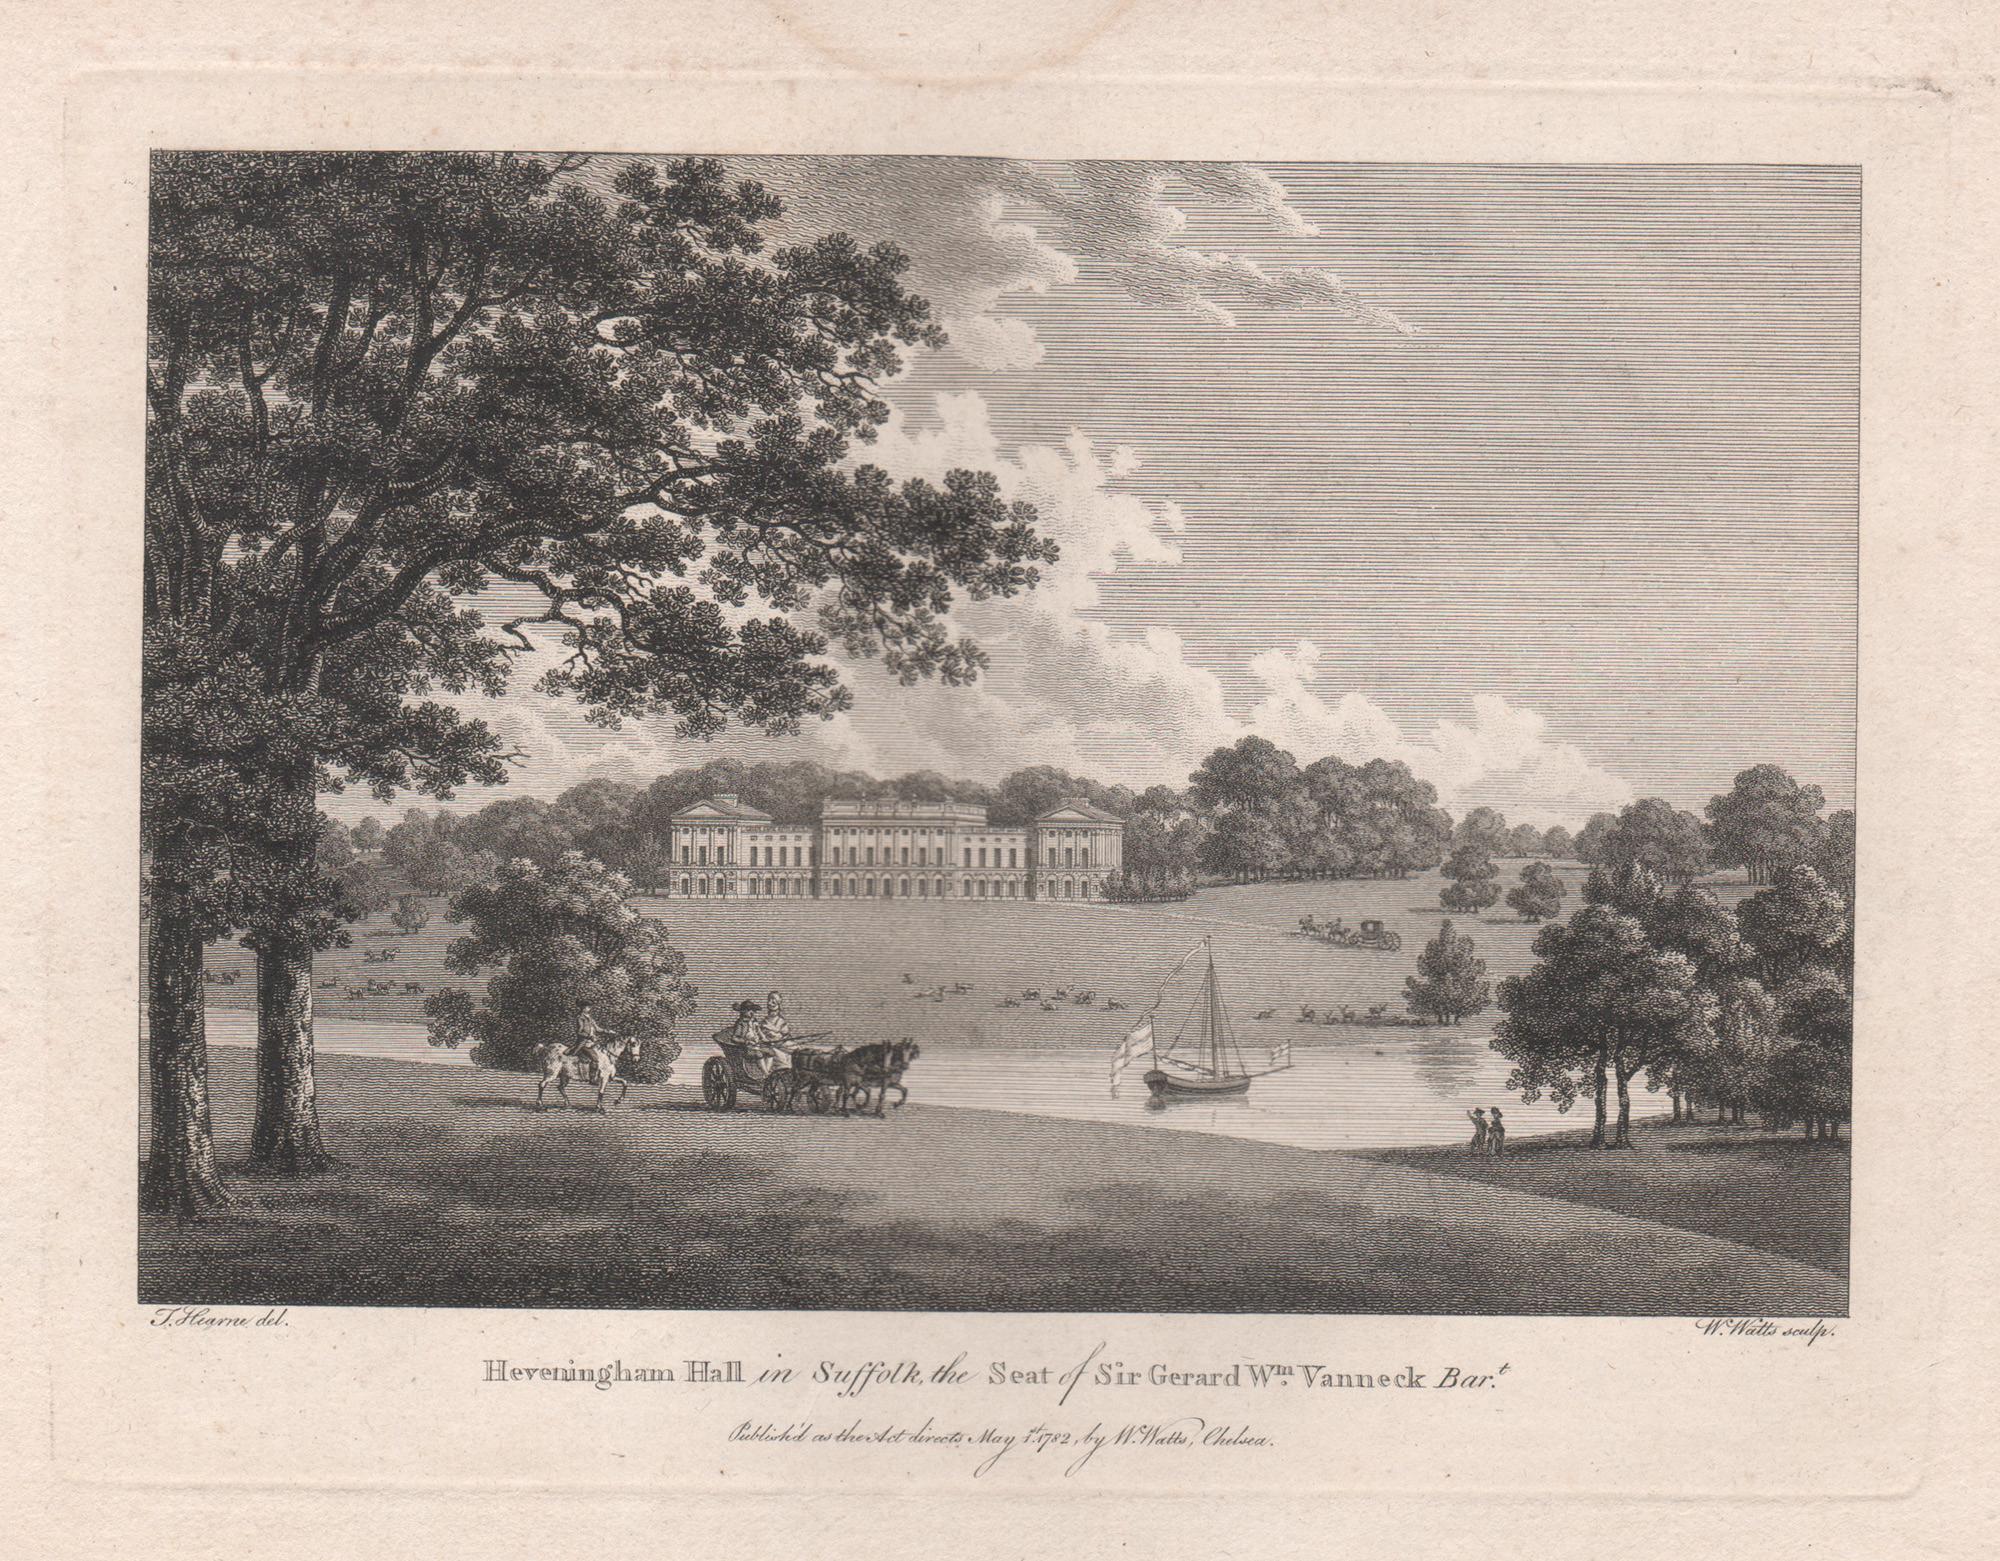 William Watts Landscape Print – Heveningham Hall in Suffolk, Gravur eines englischen Landhauses aus dem 18. Jahrhundert, 1782